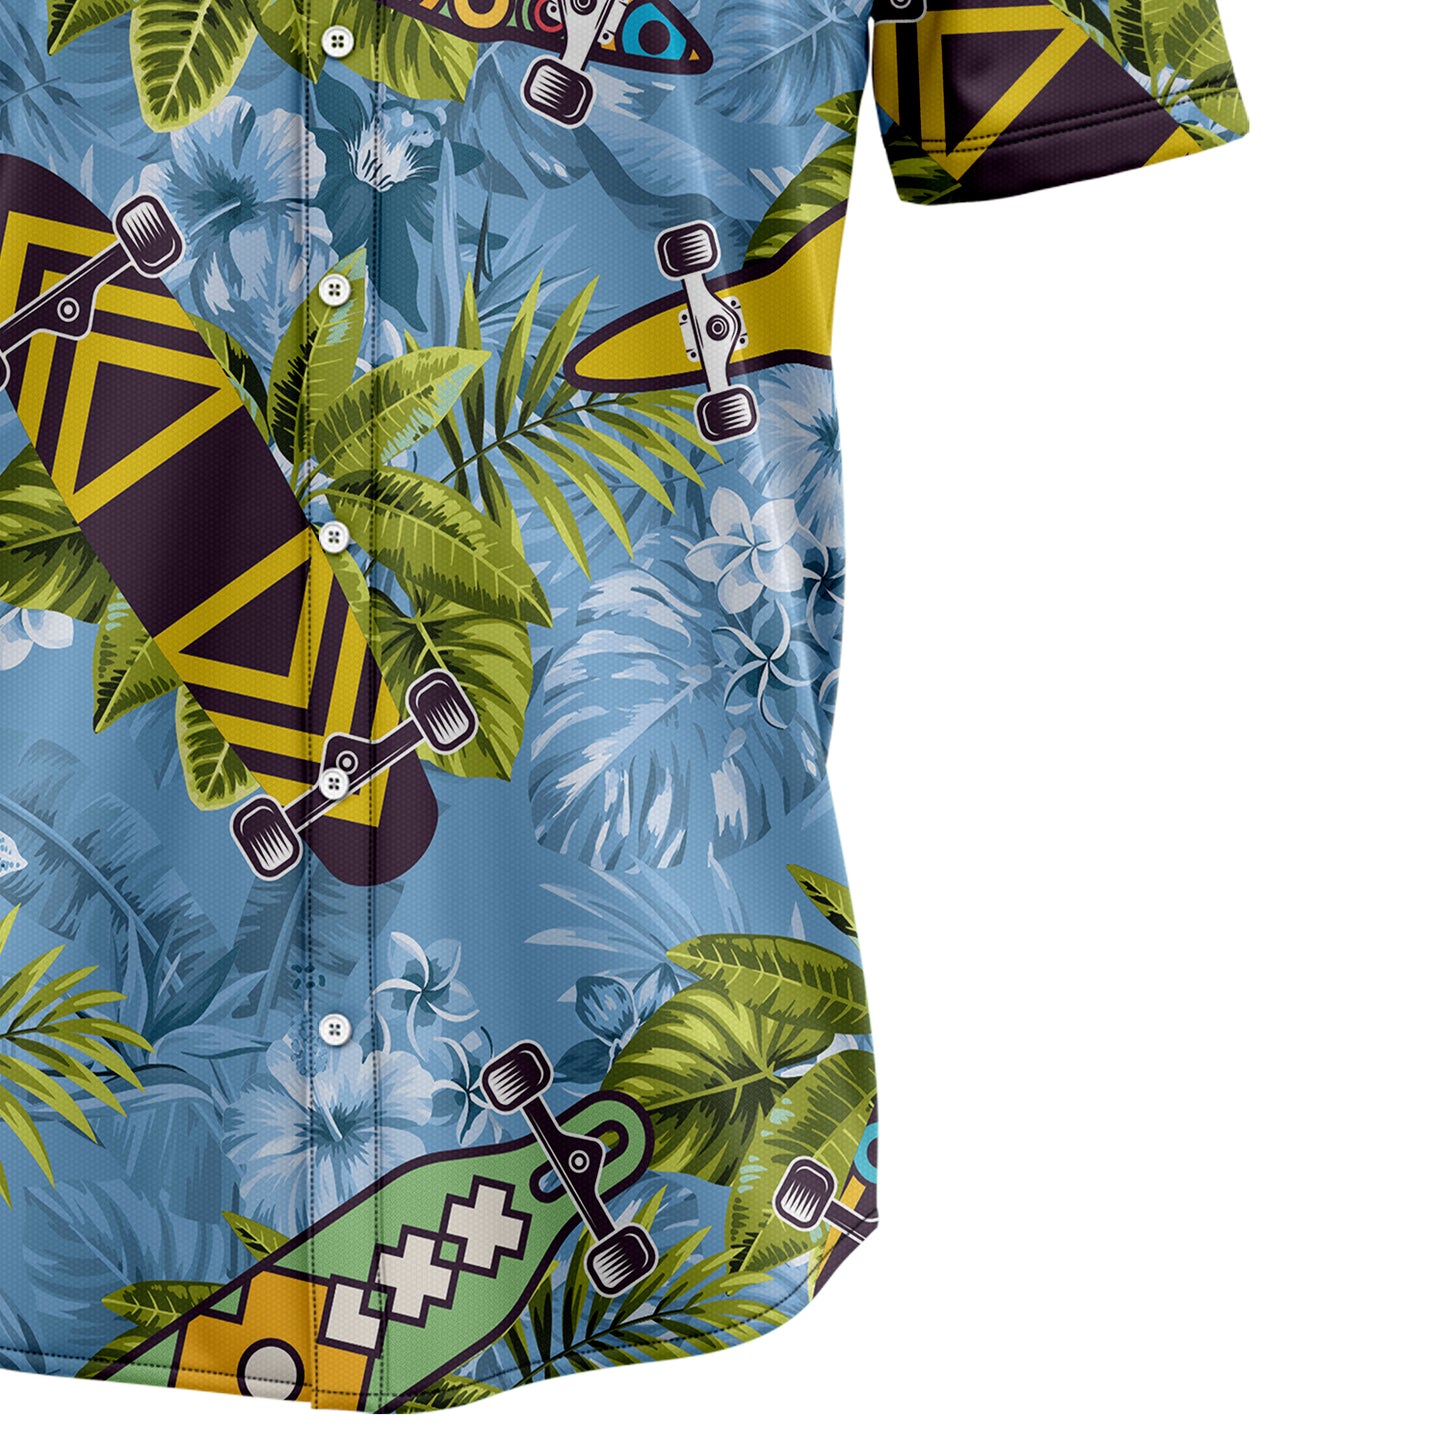 Skateboard Tropical G5714 Hawaiian Shirt